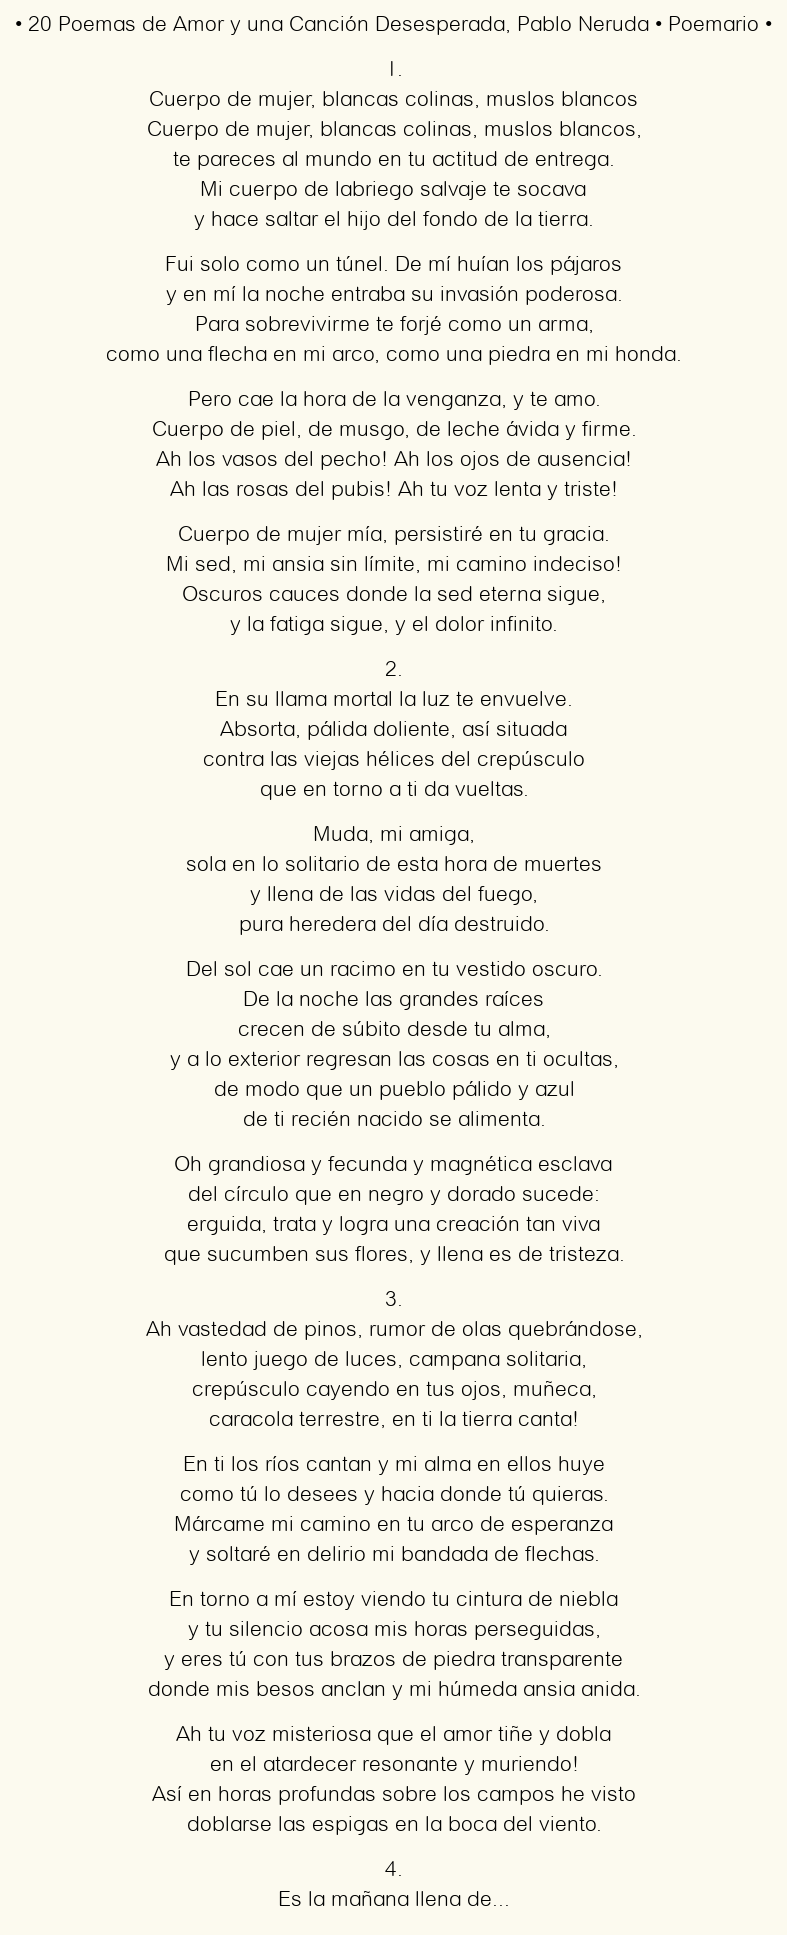 Imagen con el poema 20 Poemas de Amor y una Canción Desesperada, por Pablo Neruda